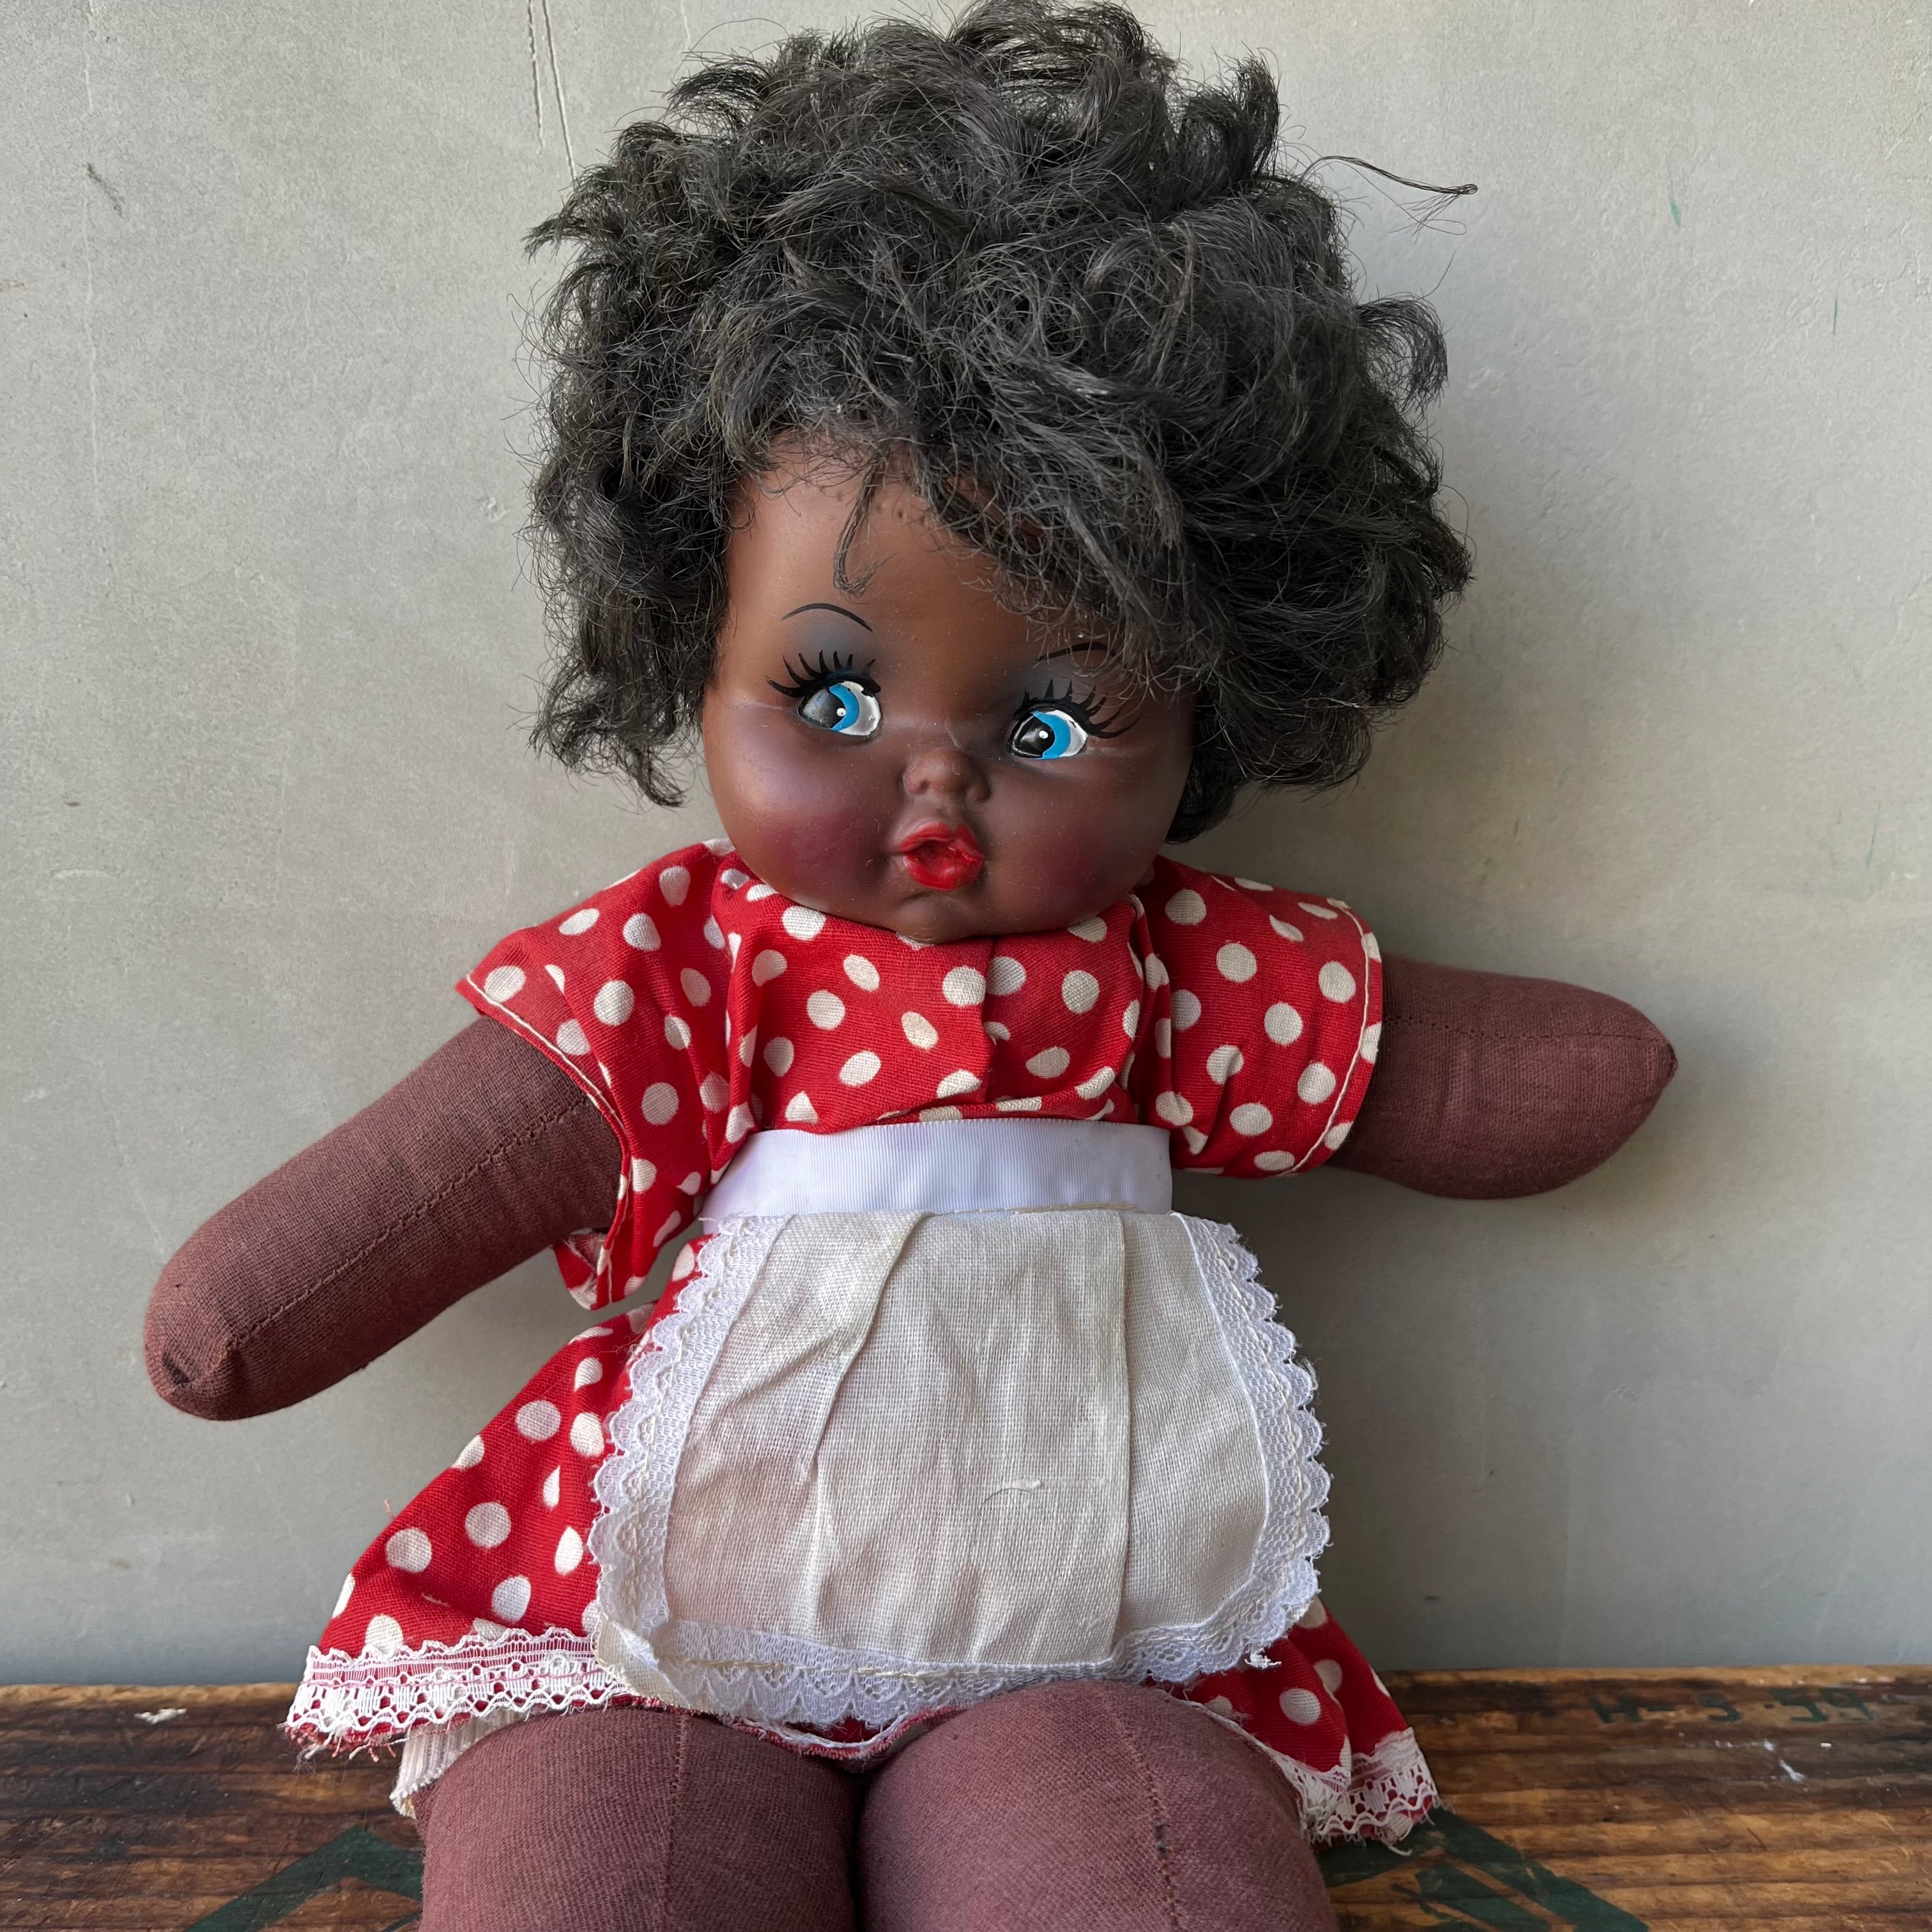 【USA vintage】African American Doll 人形それらを難有りとお考えの方